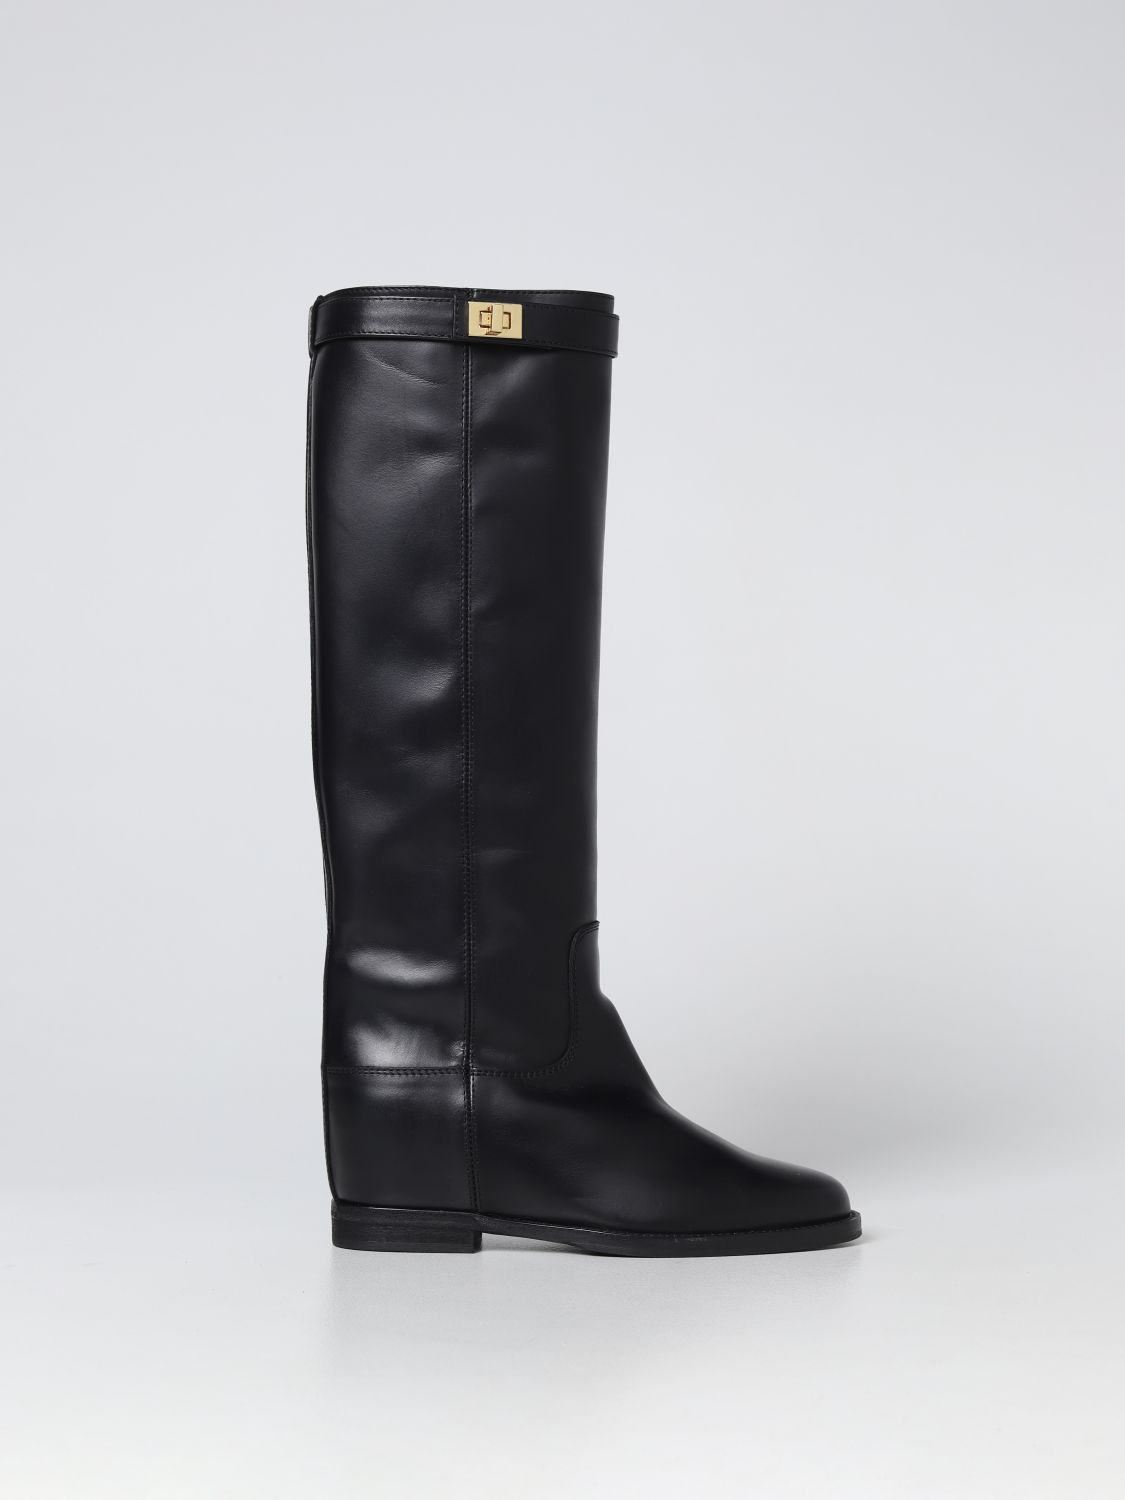 Maak het zwaar waarom niet effect VIA ROMA 15: boots for woman - Black | Via Roma 15 boots 3807776 online on  GIGLIO.COM